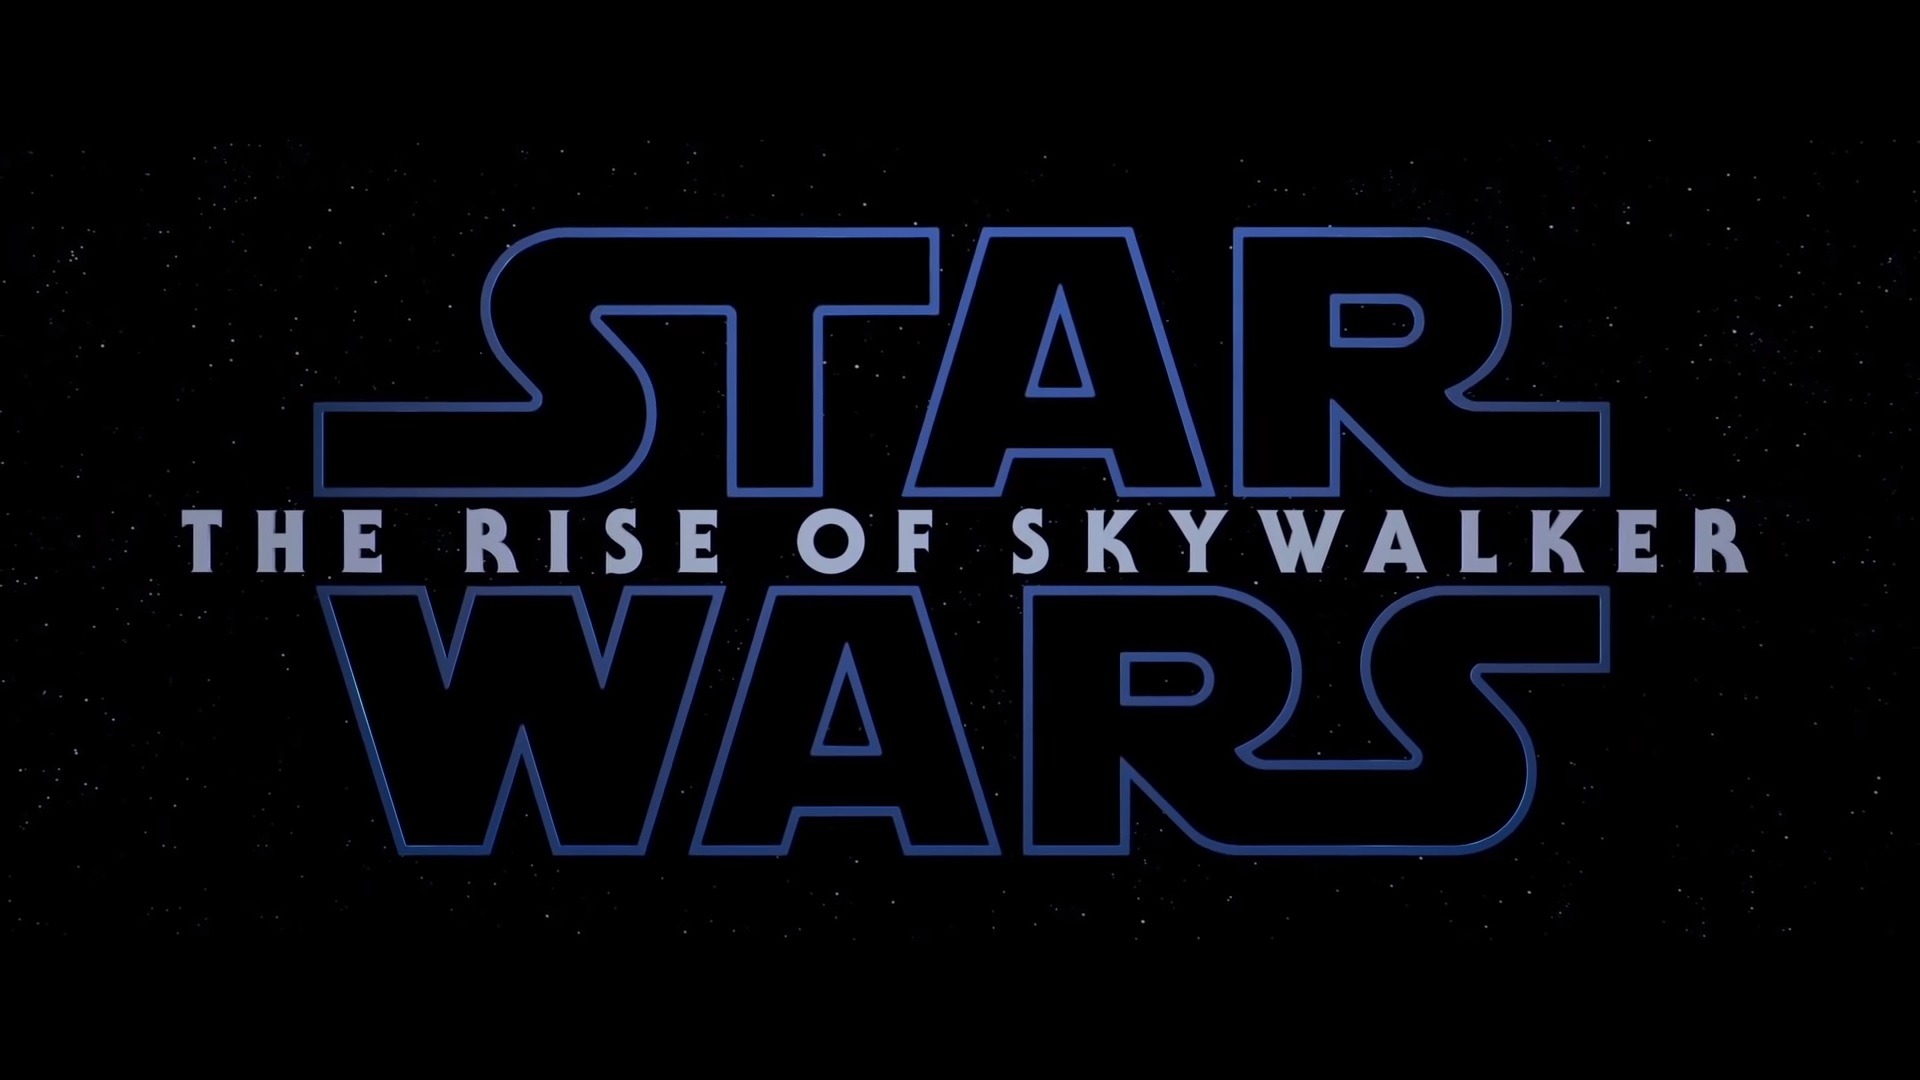 Star Wars: The Rise of Skywalker (2019) - Trailer - MEGANUT1920 x 1080